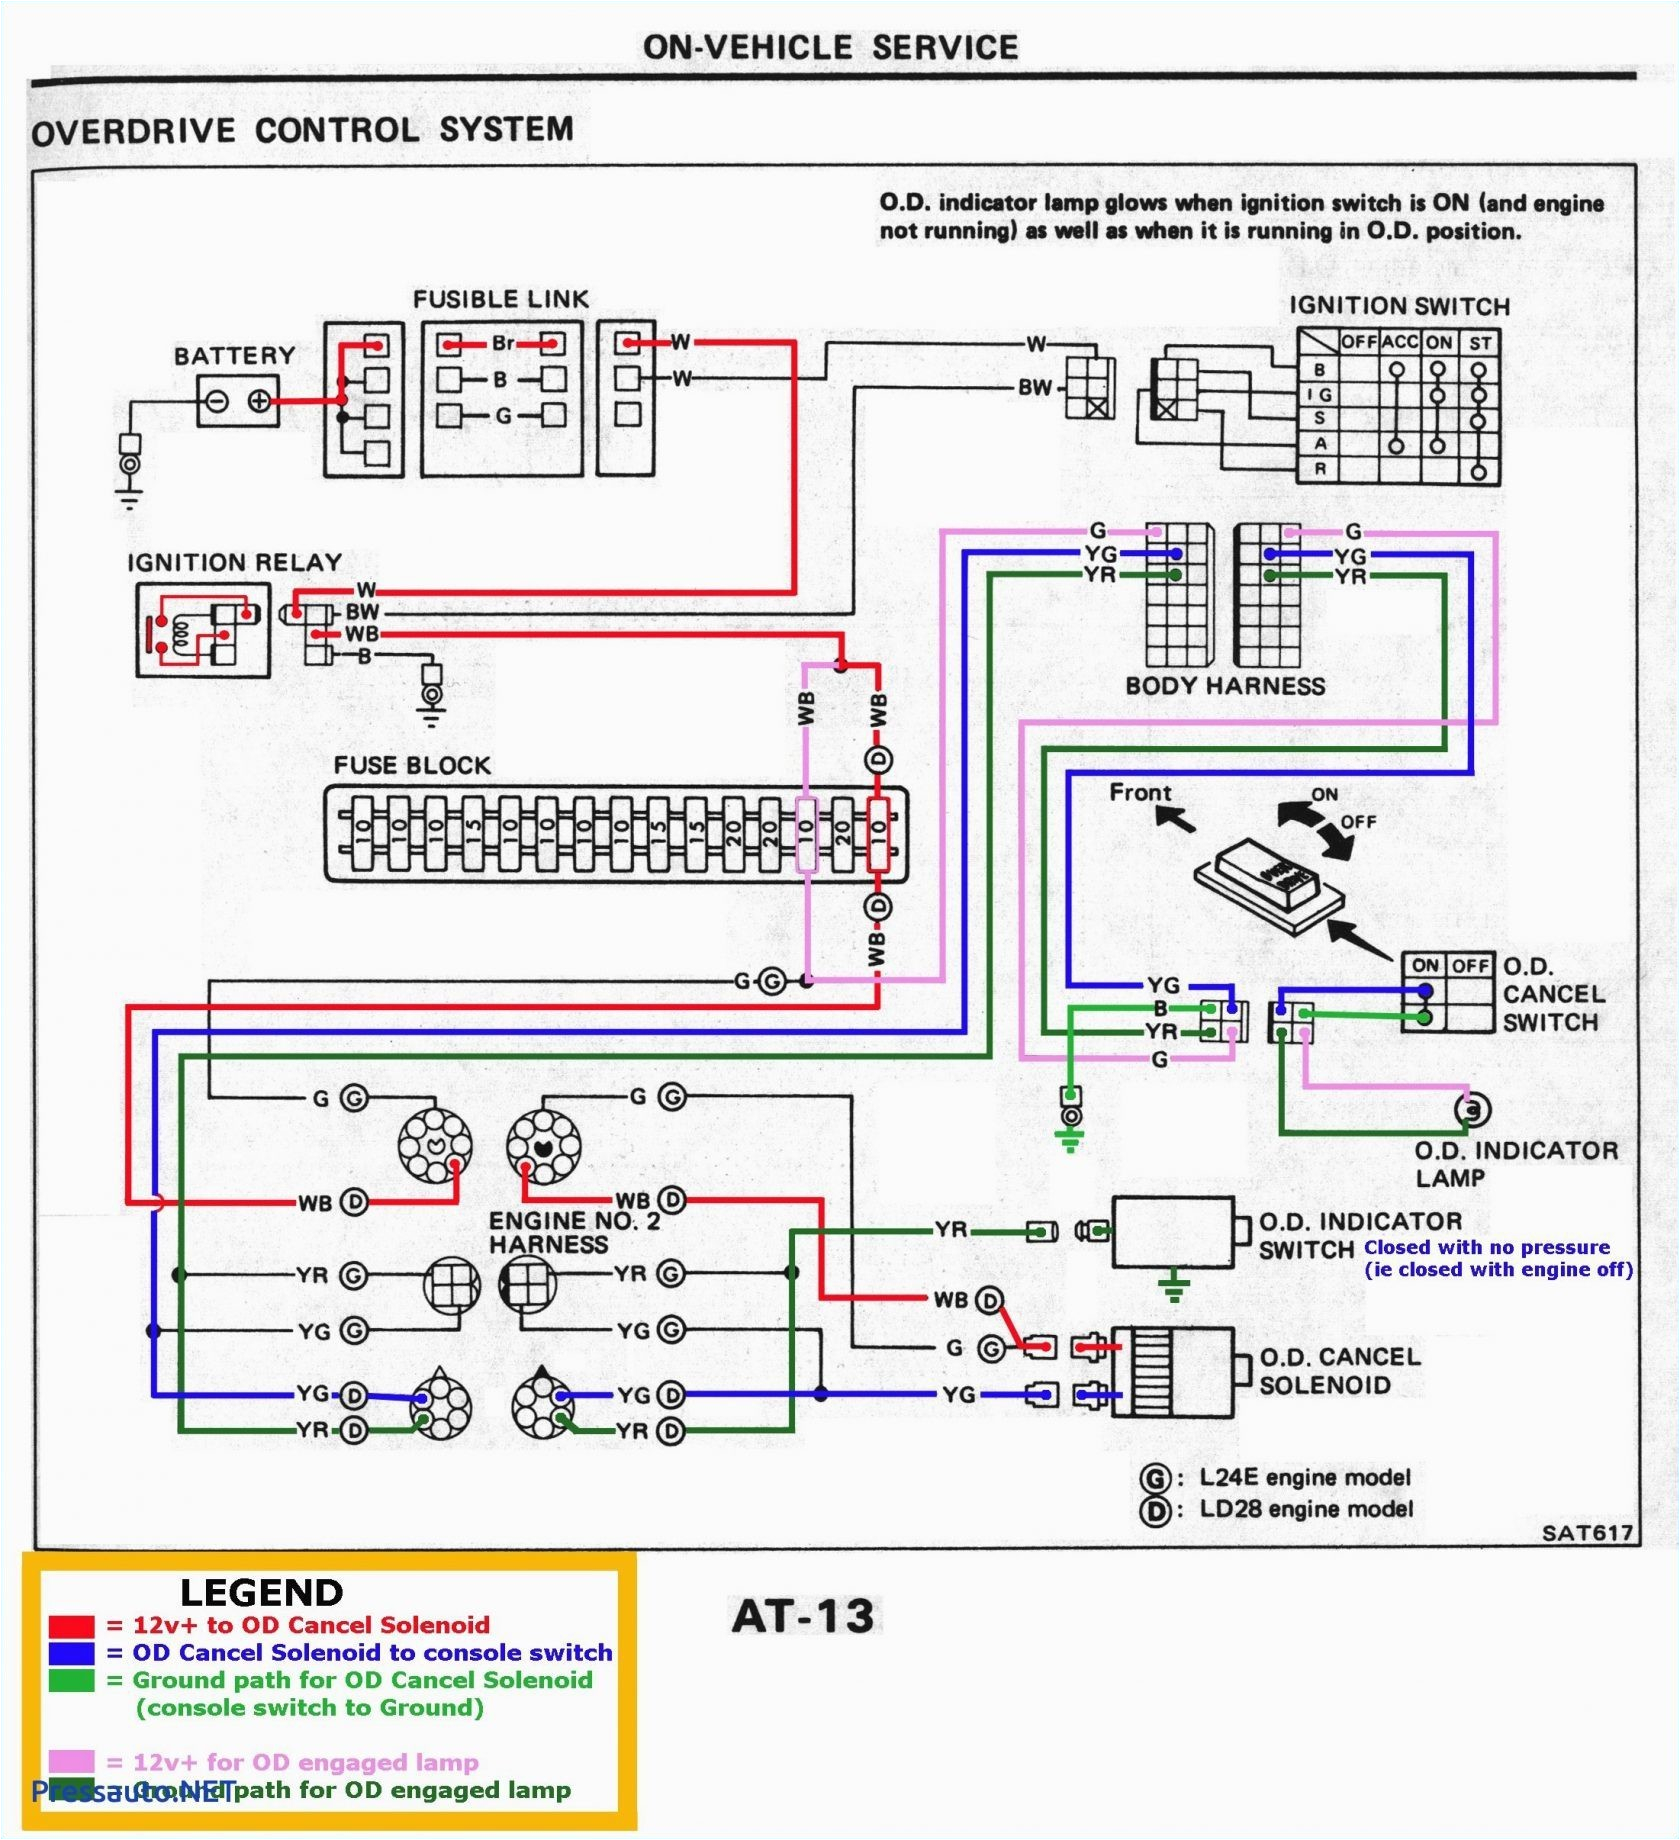 2002 gmc alternator wiring schema wiring diagram 2002 gmc alternator wiring wiring diagram toolbox 2002 gmc